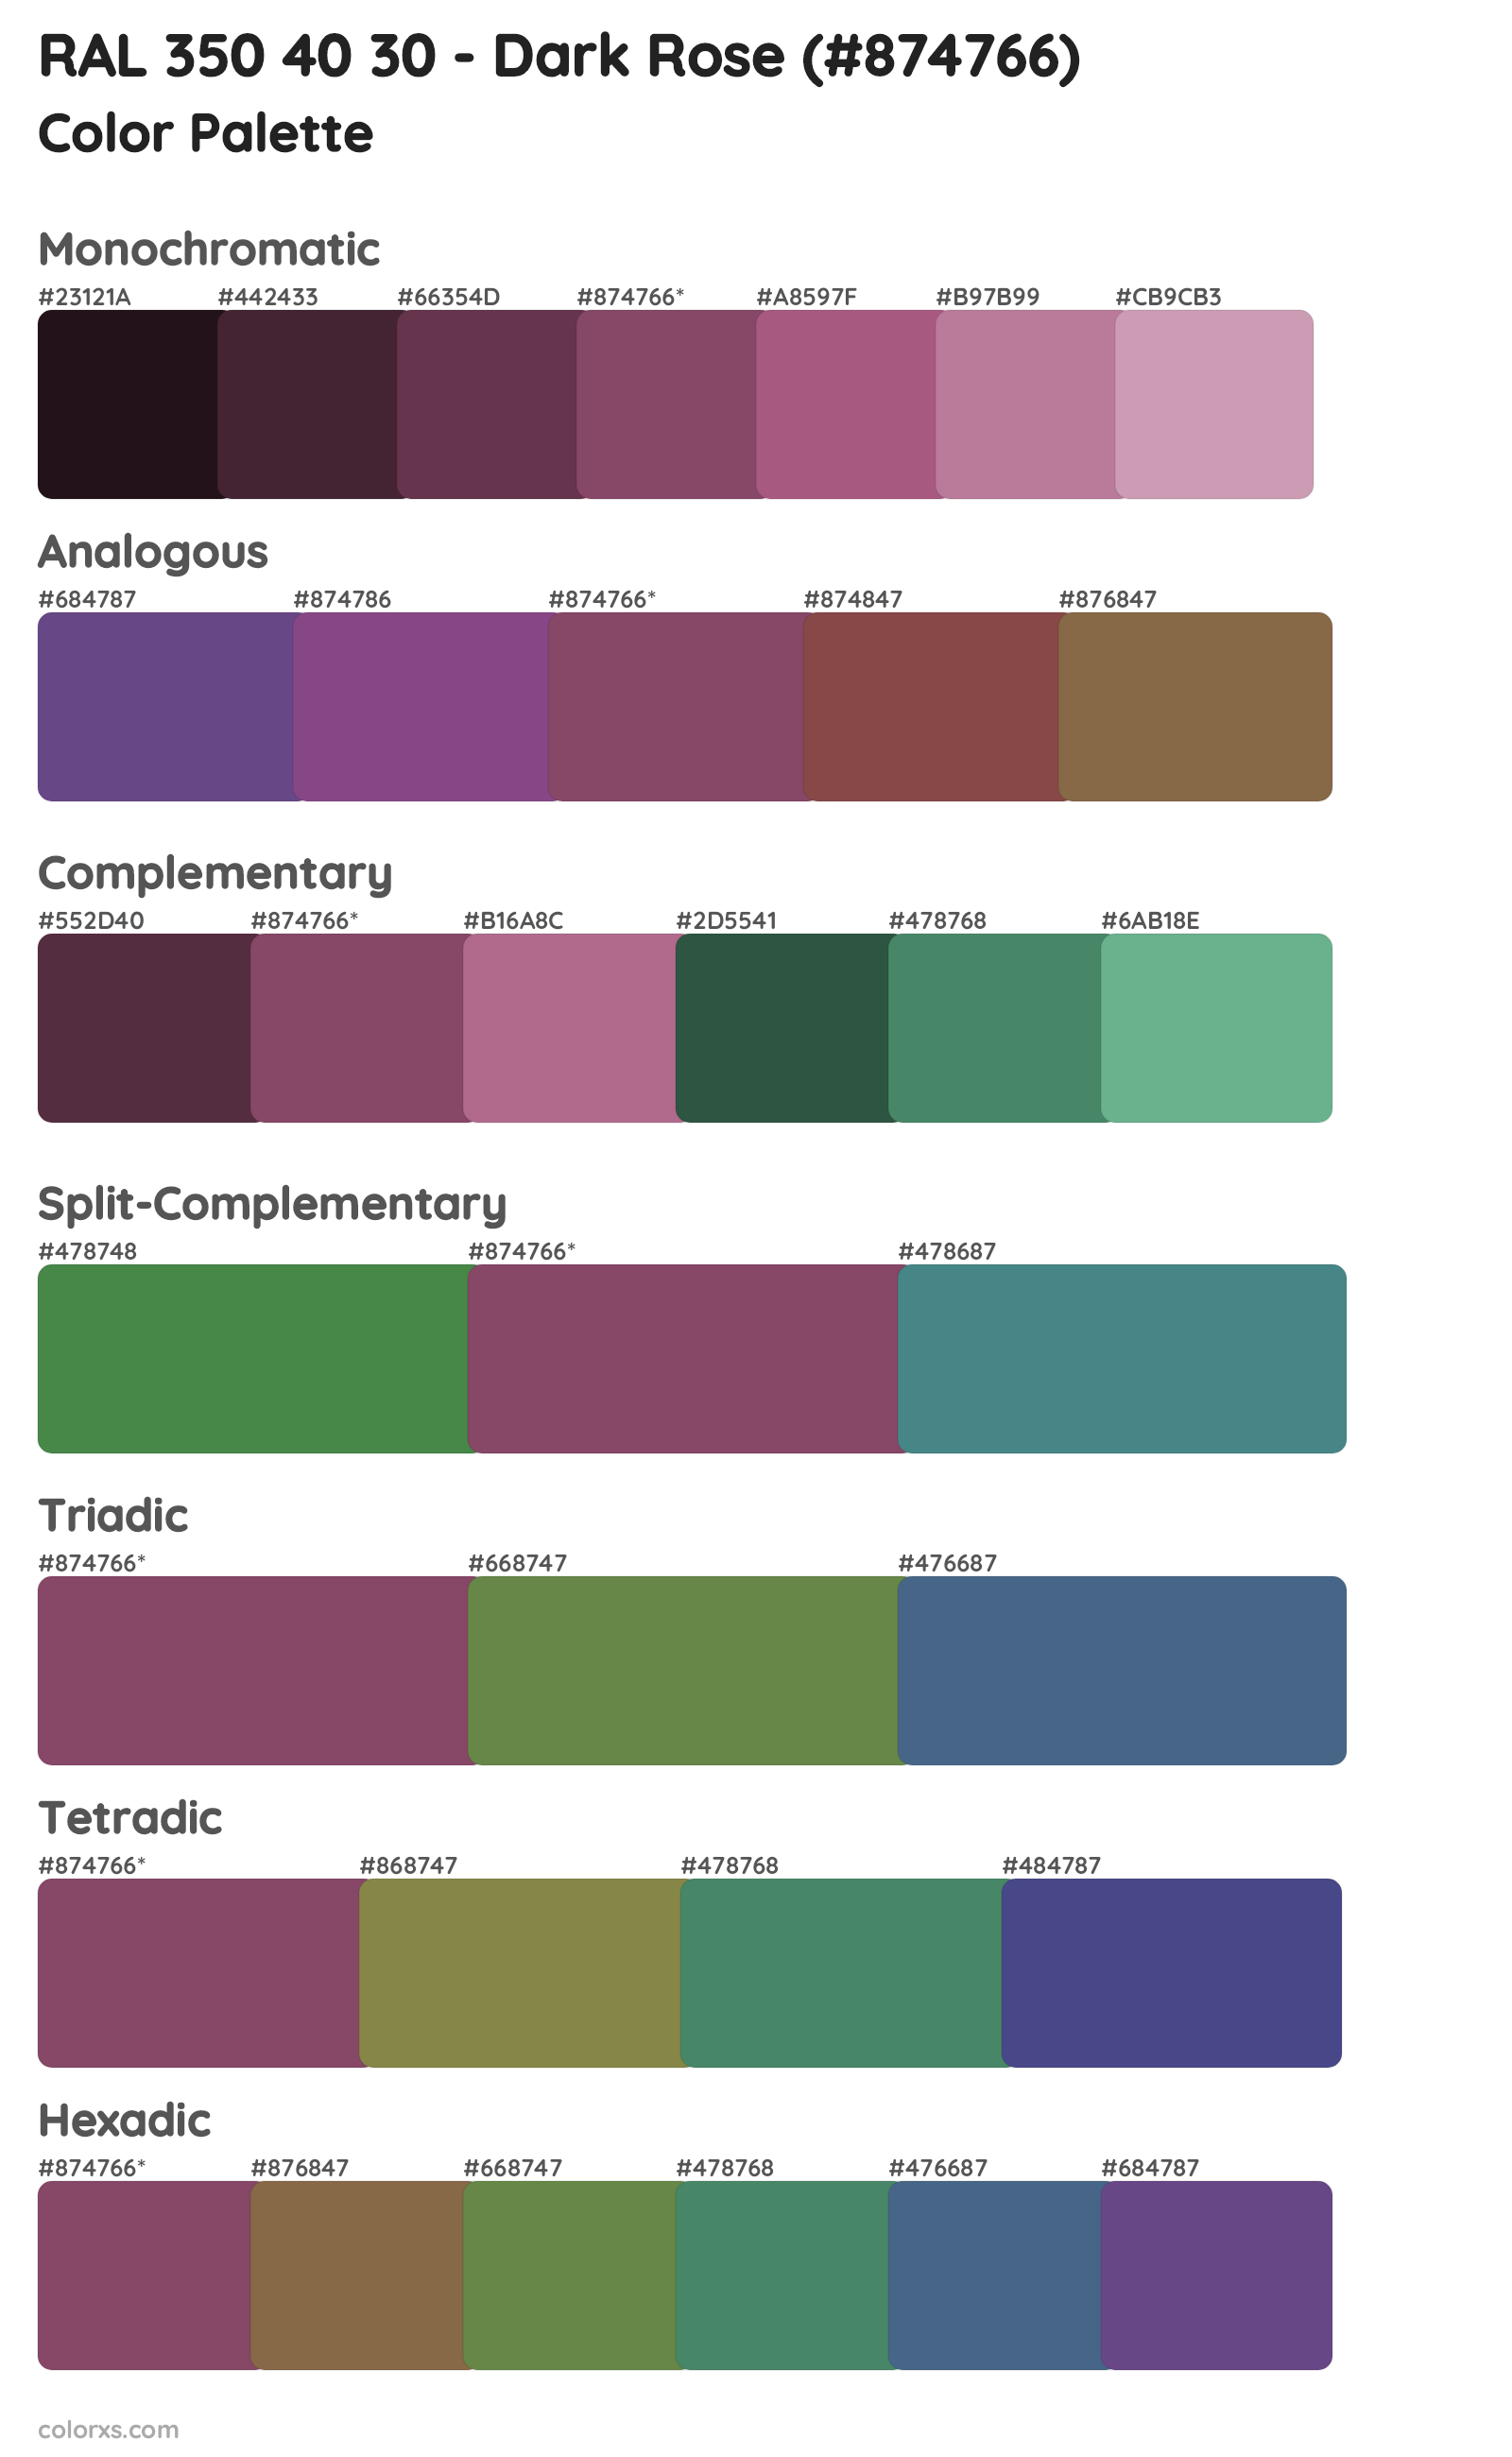 RAL 350 40 30 - Dark Rose Color Scheme Palettes